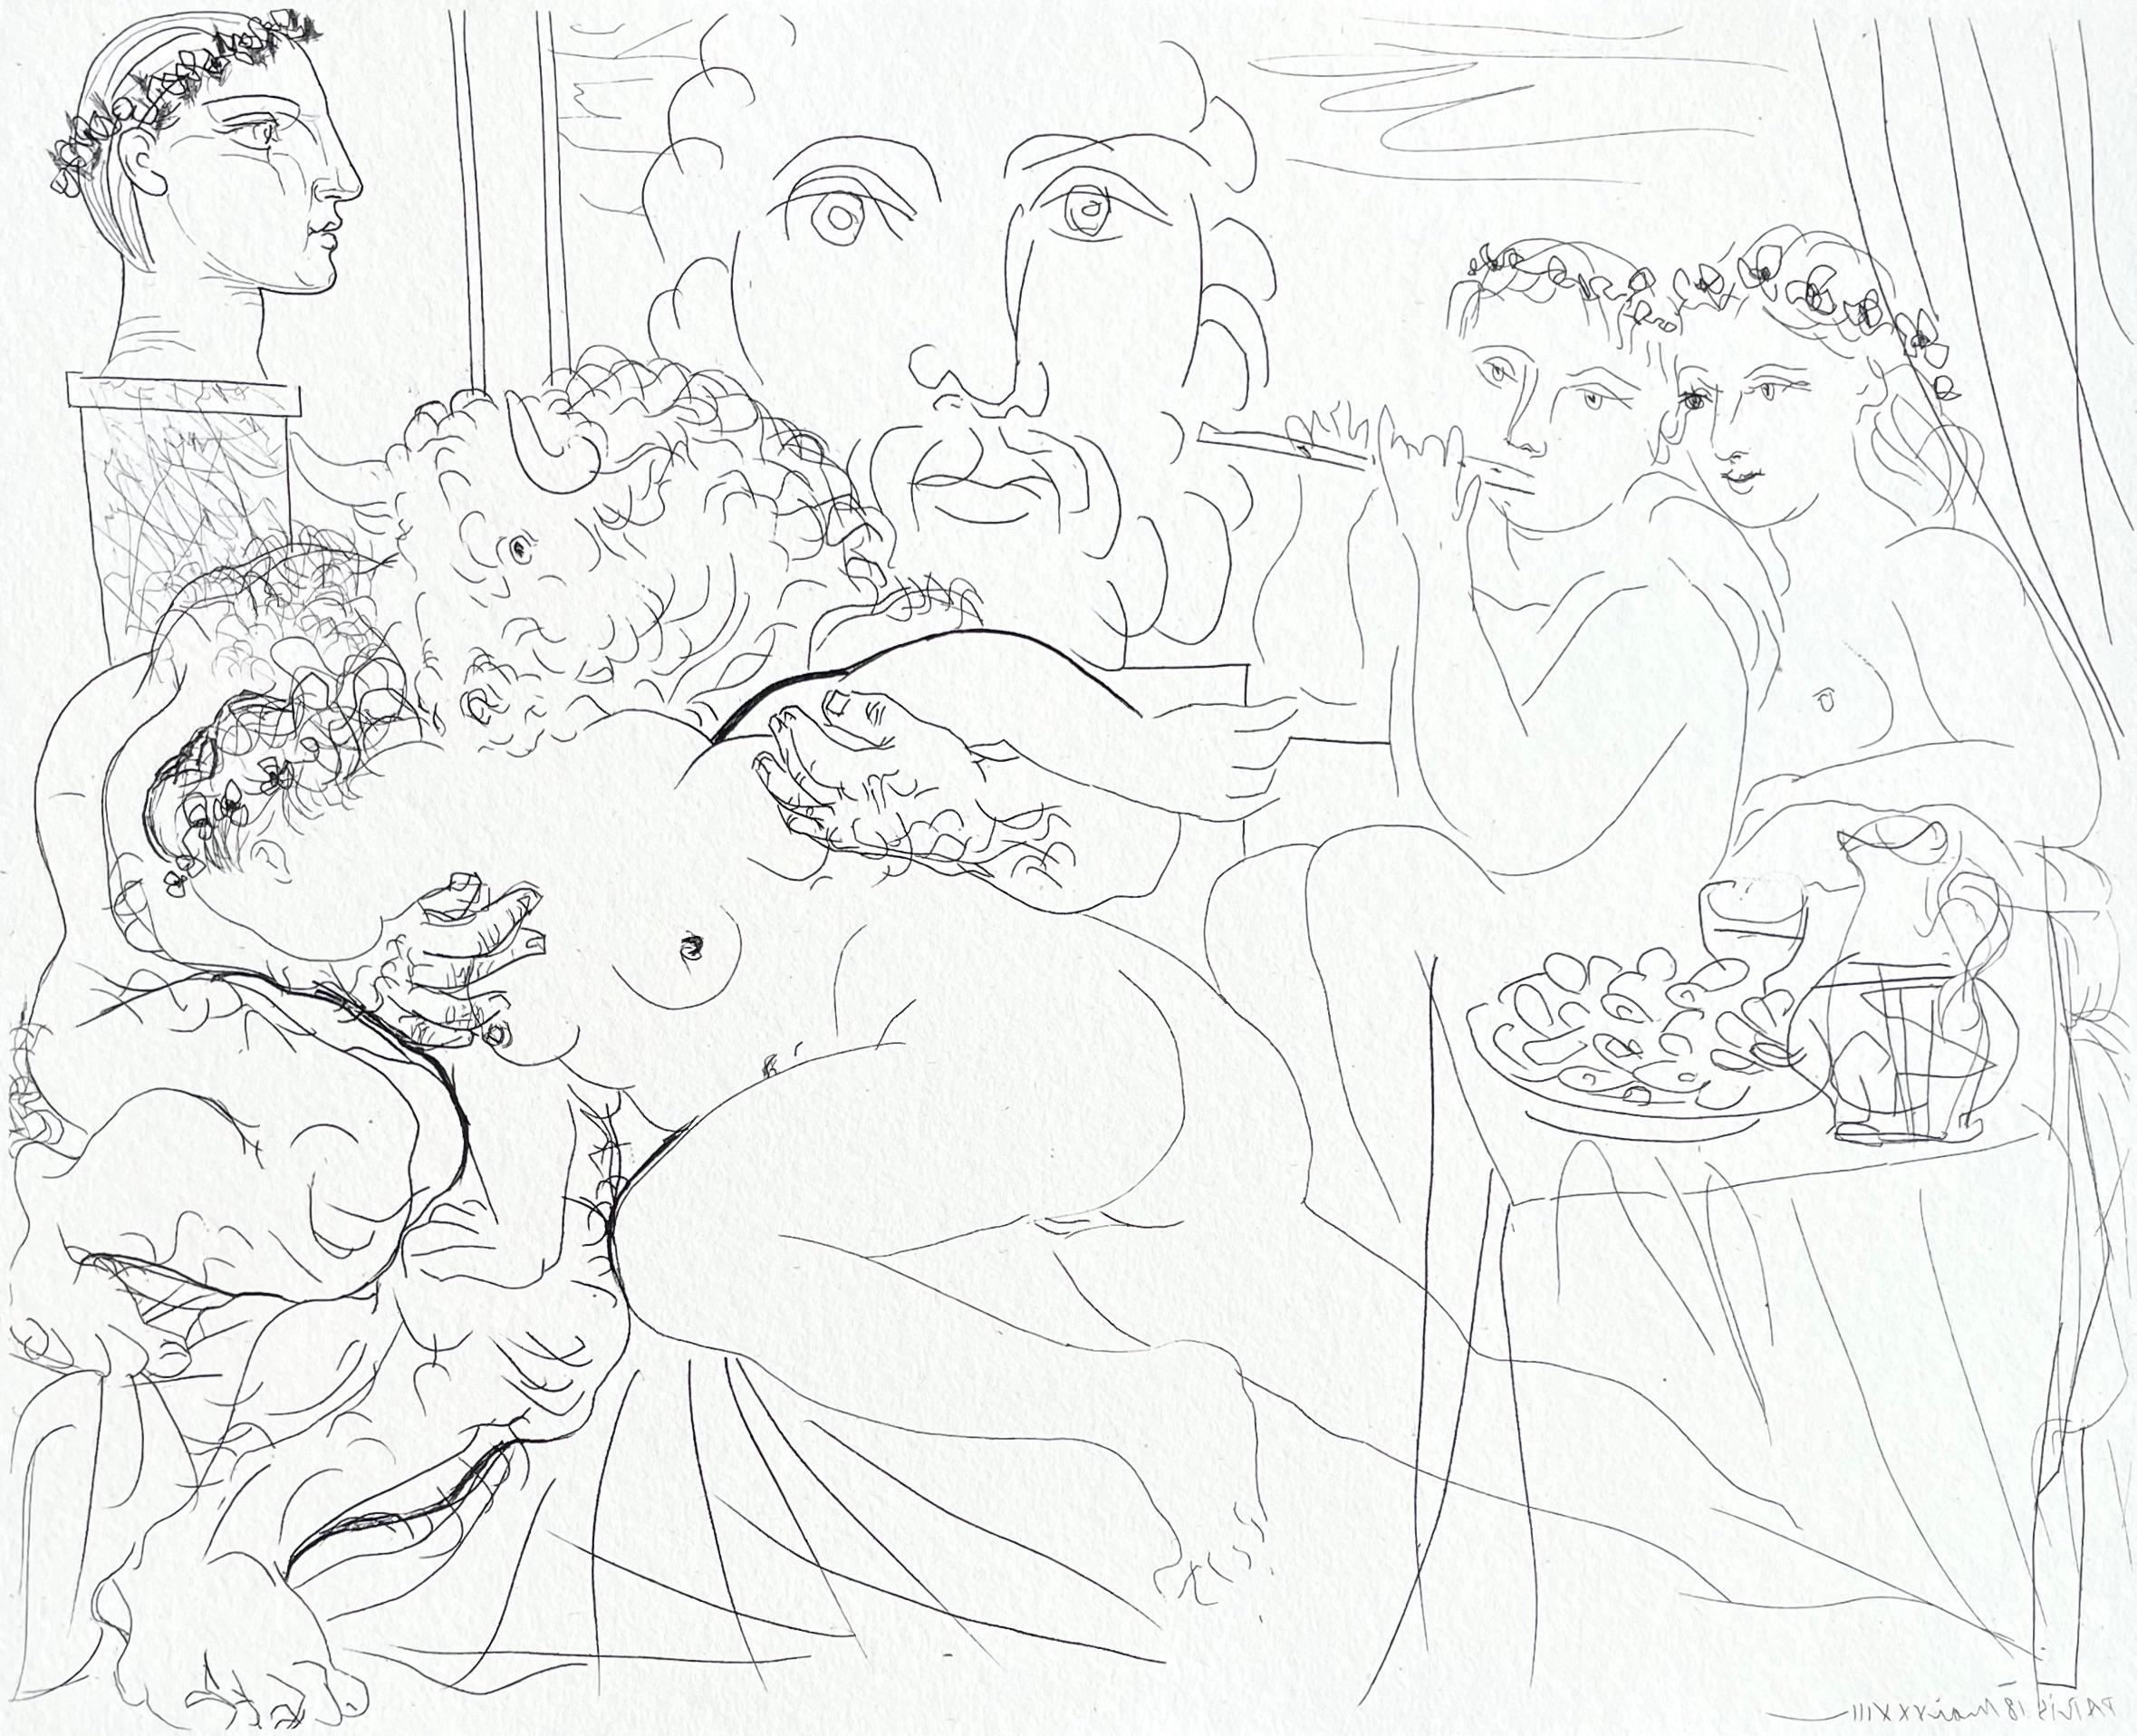 Picasso, Minotaure Caressant Une Femme (after)